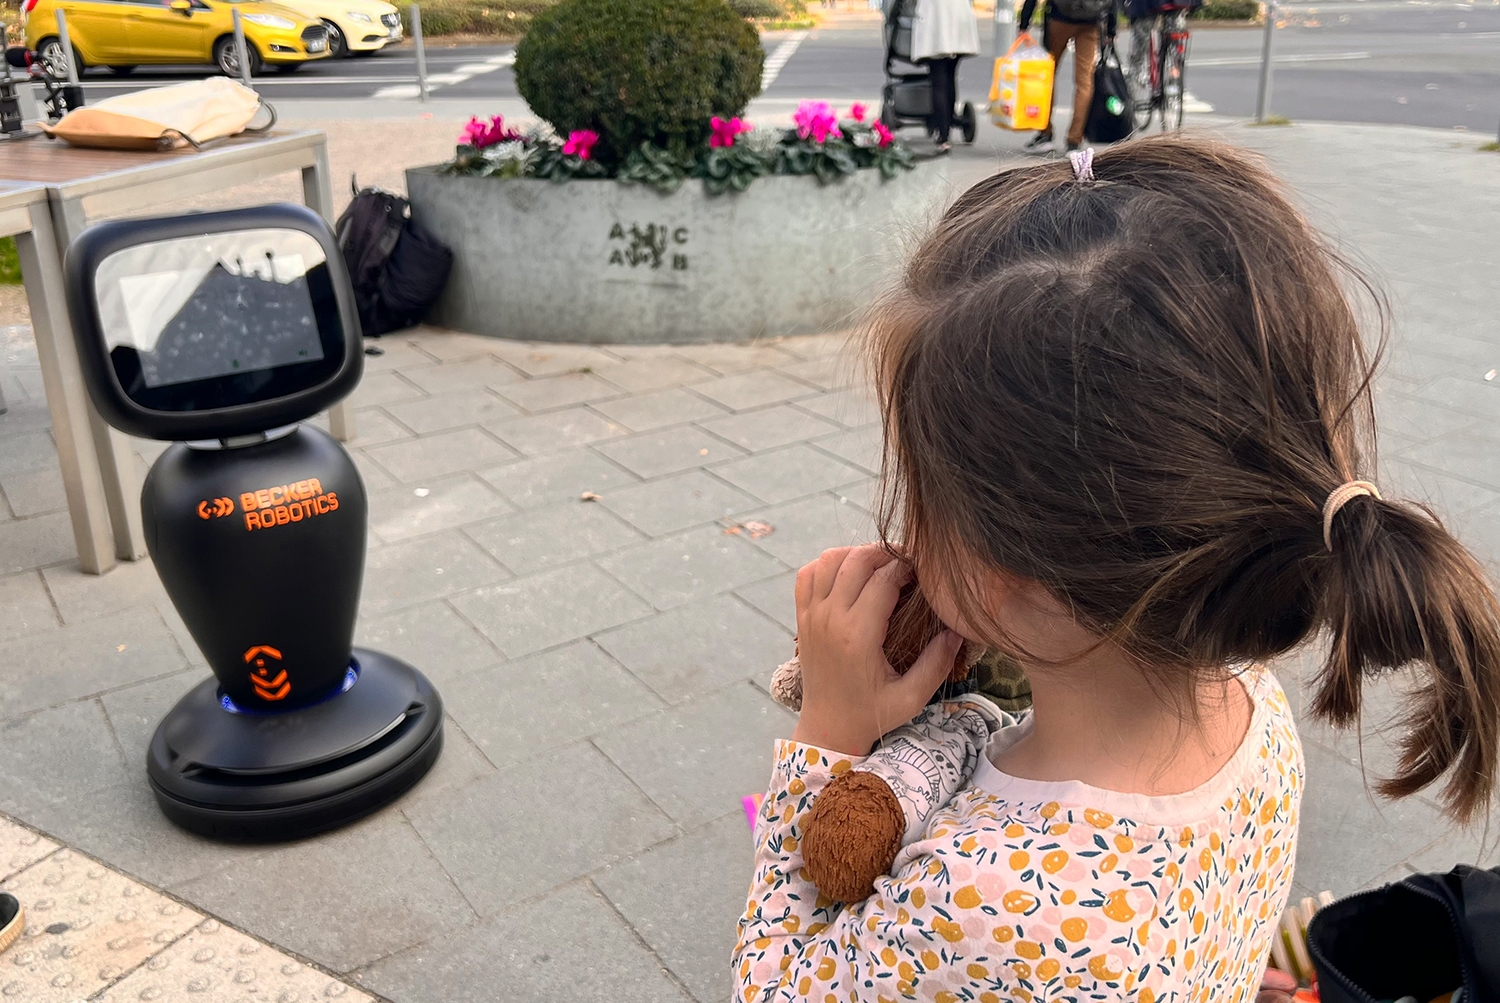 Kinder-sind-von-dem-Roboter-fasziniert Unsere Aktion (A)Utopie Rethelstraße mit Roboter JAIme